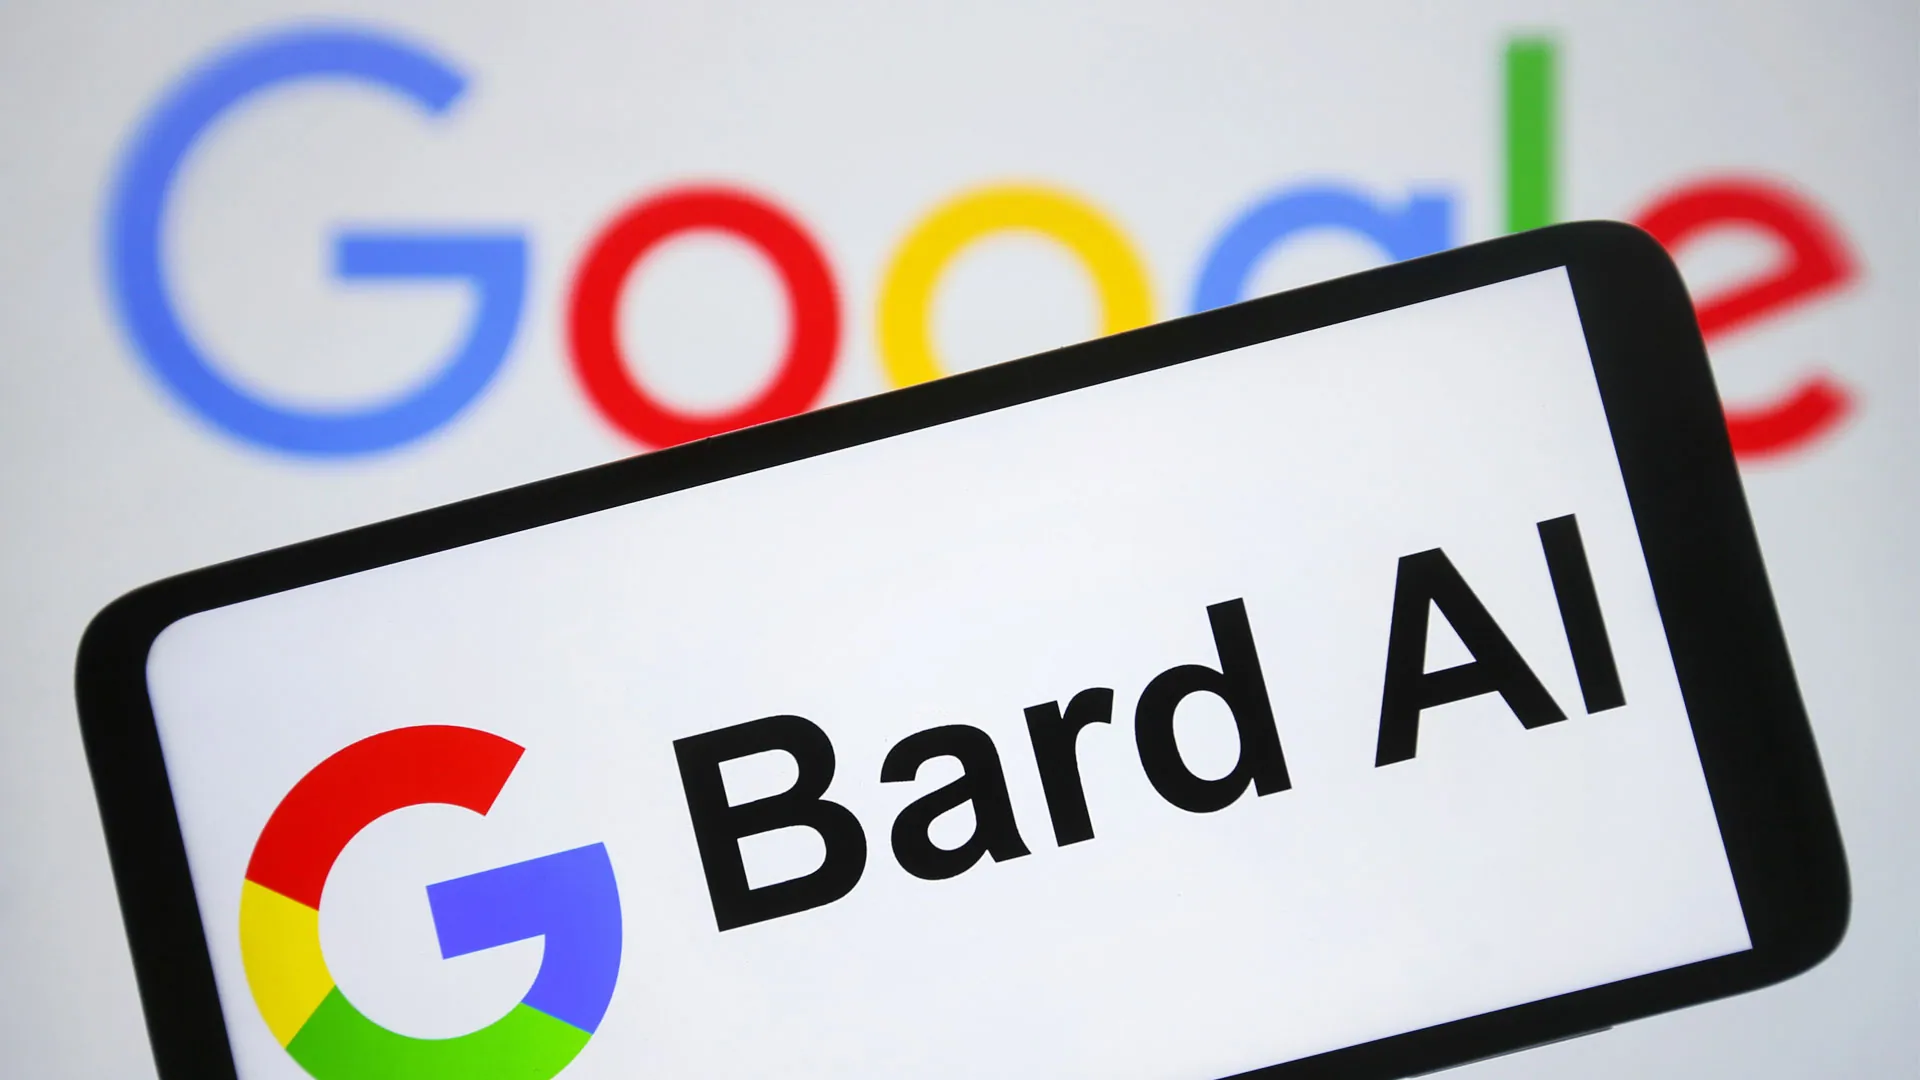 Can Turnitin Detects Google Bard